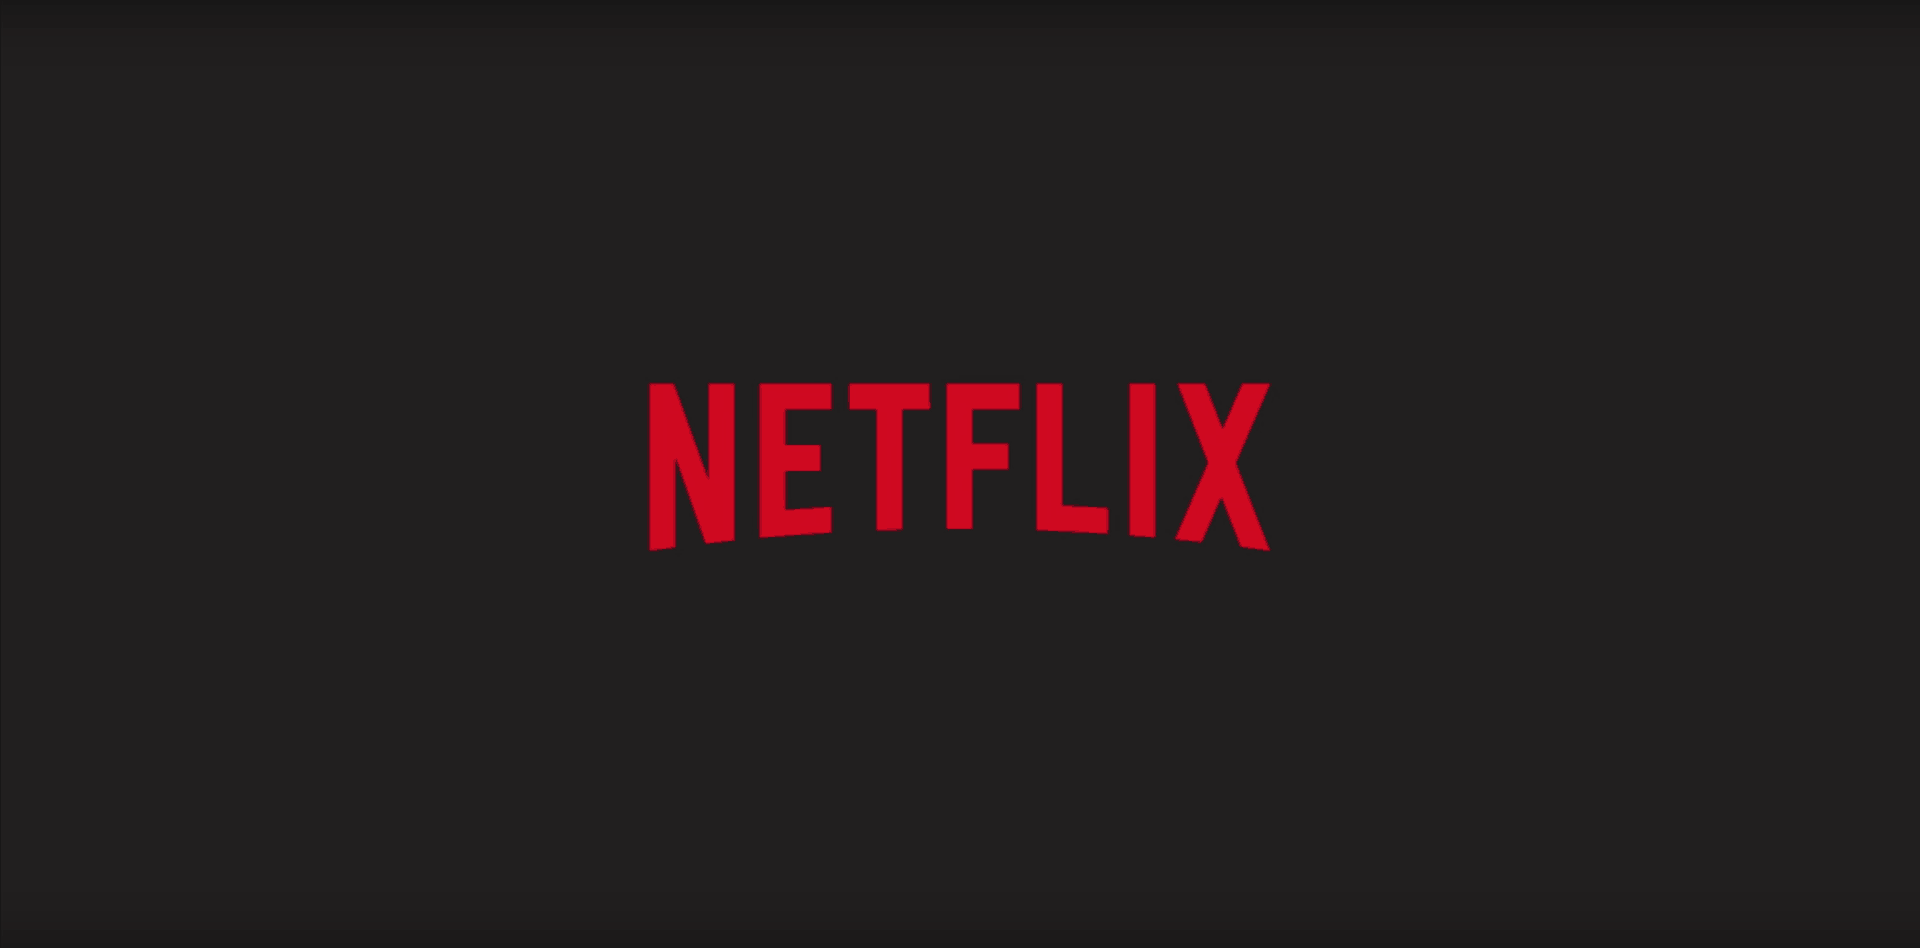 Fitur Netflix iOS Baru ‘Koleksi Sh Menunjukkan Konten yang Disematkan Manusia